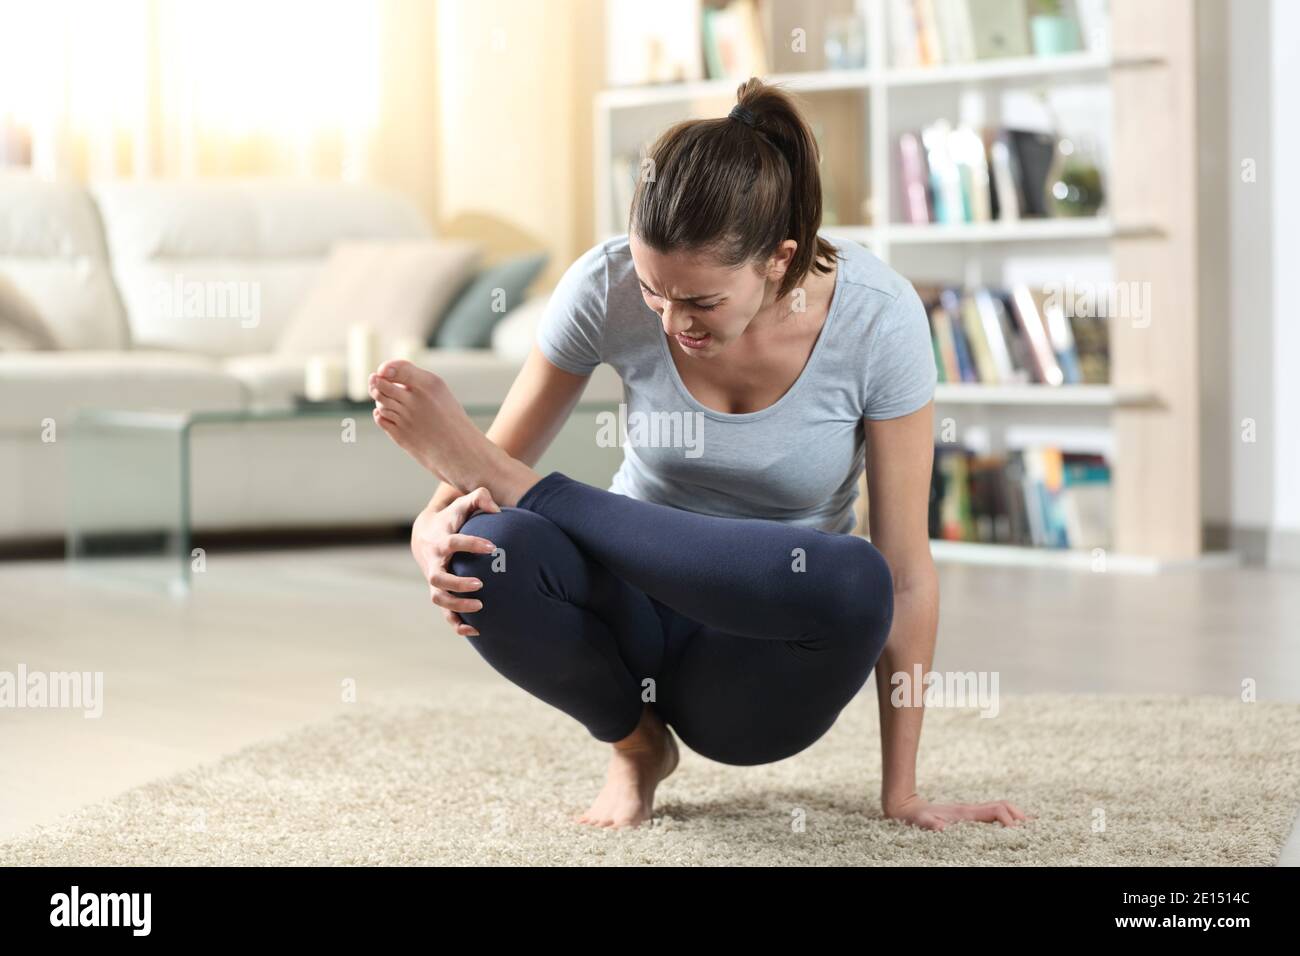 Frau leiden Knieschmerzen, während tut Yoga-Übung auf Der Boden zu Hause Stockfoto